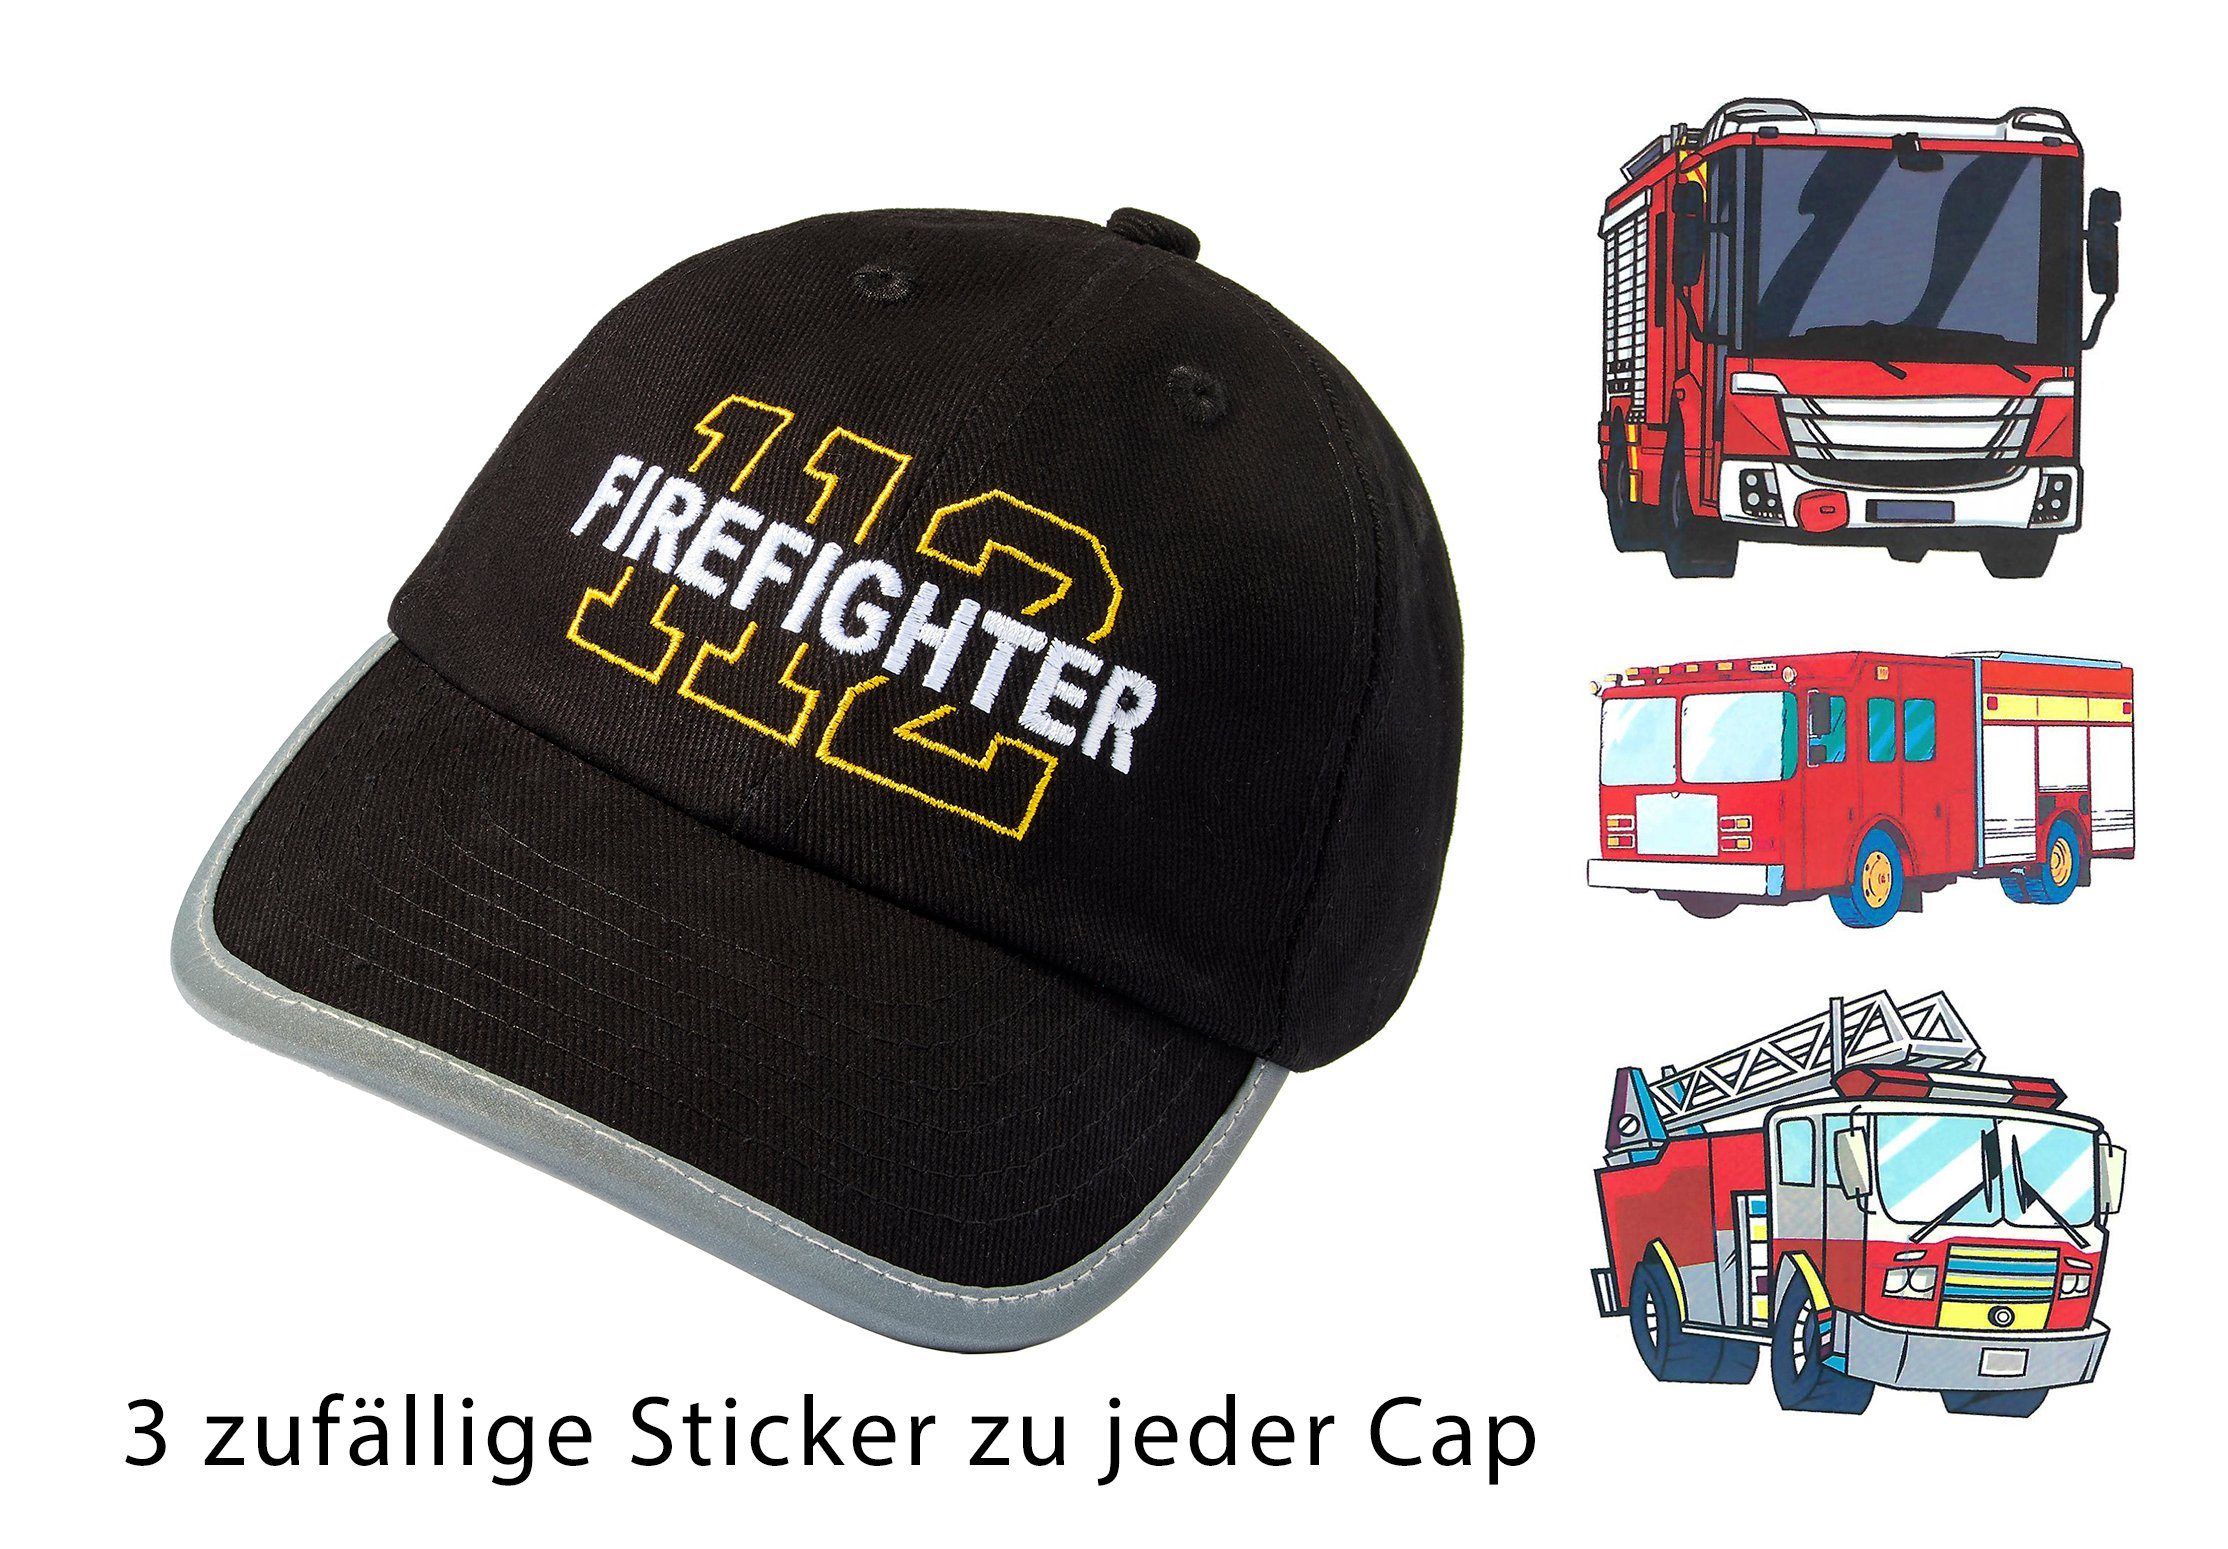 Feuerwehrauto Baddery 3 Sticker), Baseball Reflektoren Einheitsgröße, Firefighter One Size Stick, Schwarz Cap Kinder - Kappe (inkl. Klett-Verschluss